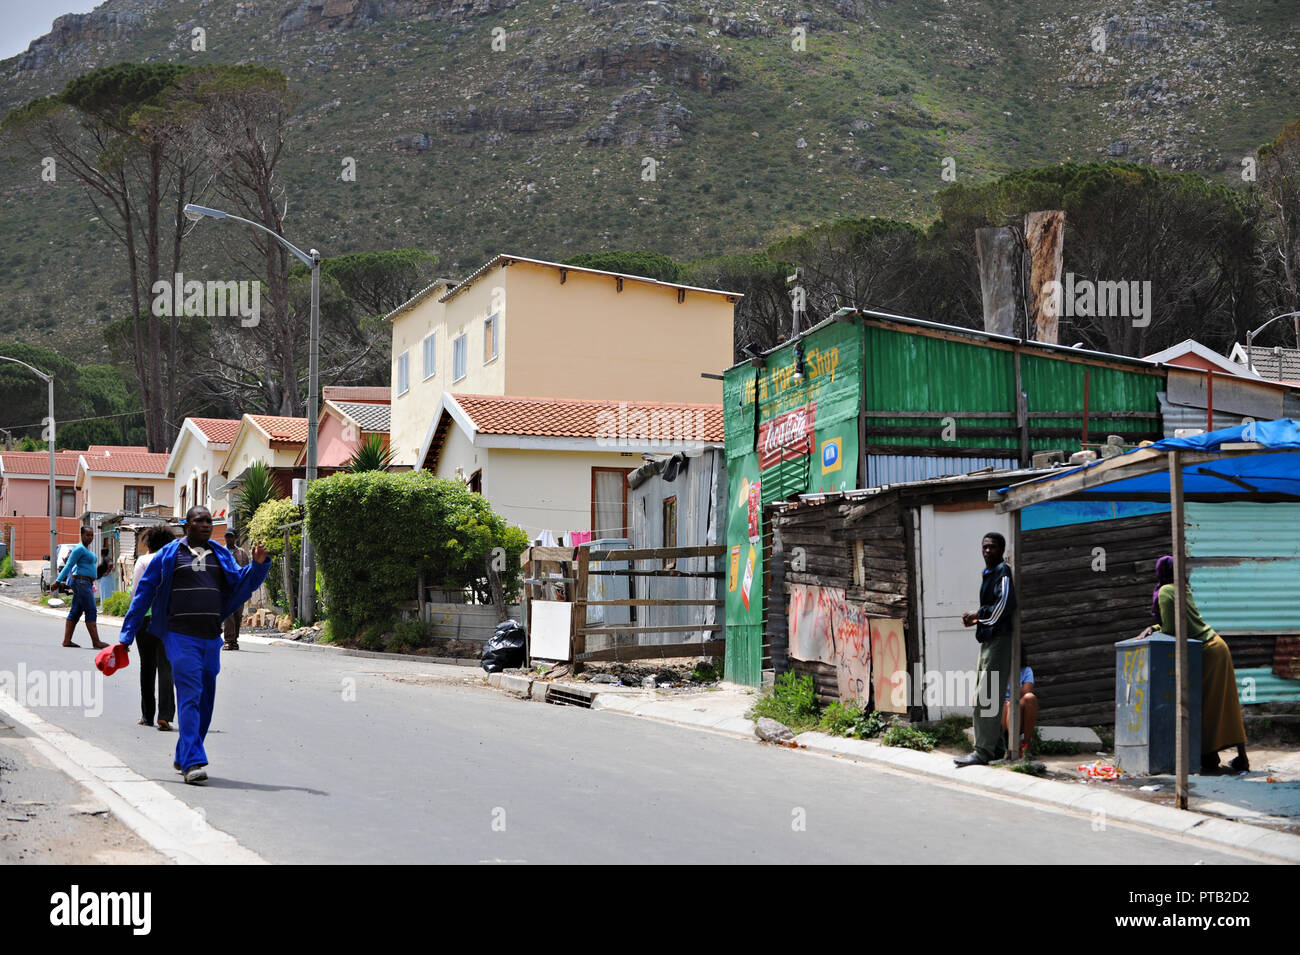 Le canton village d'Imizamo Yethu un bidonville à Hout Bay, Cape Town, Afrique du Sud Banque D'Images